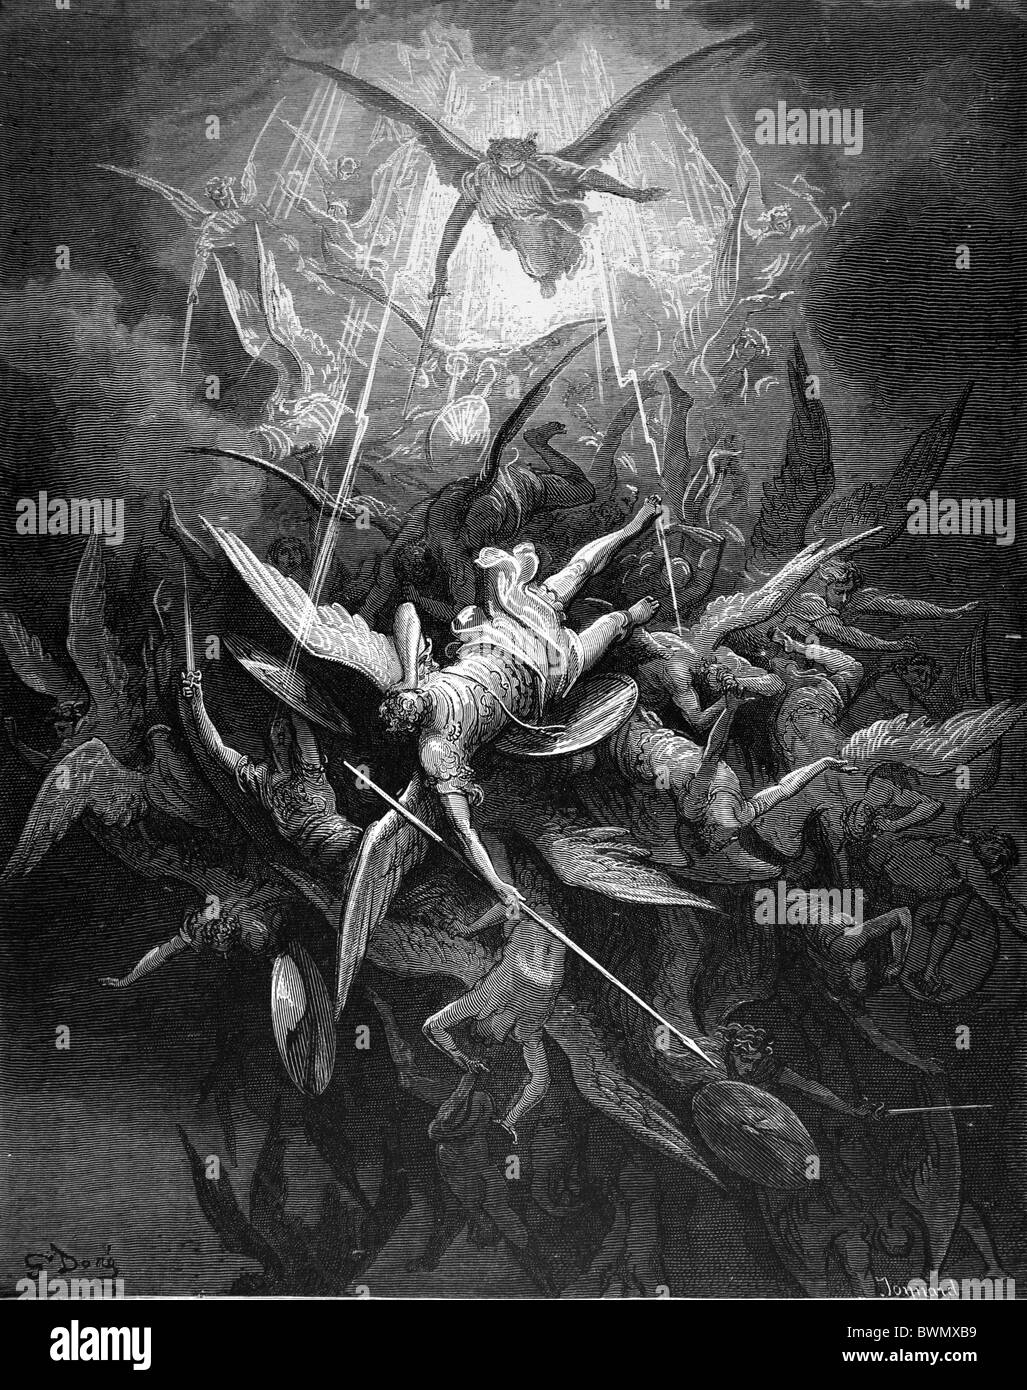 Gustave Doré ; l'automne de l'anges rebelles de John Milton's Paradise Lost ; gravure noir et blanc Banque D'Images